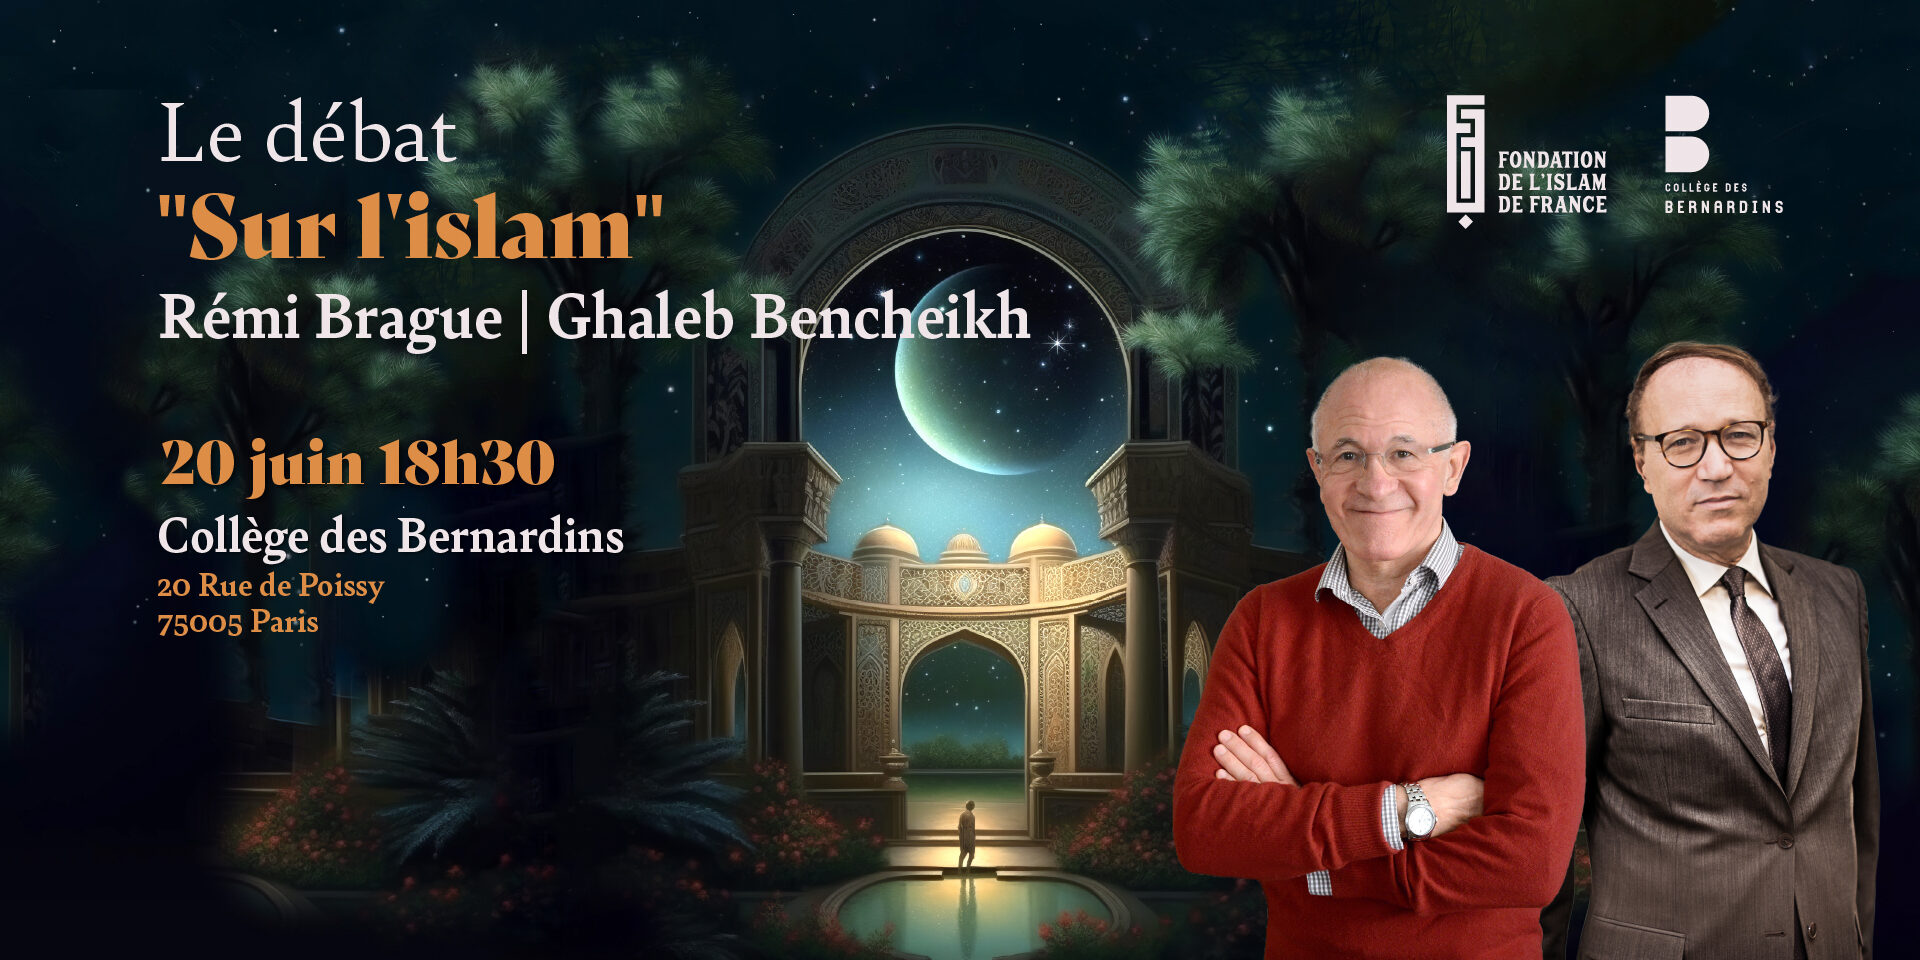 Le débat "Sur l'islam" Rémi Brague / Ghaleb Bencheikh